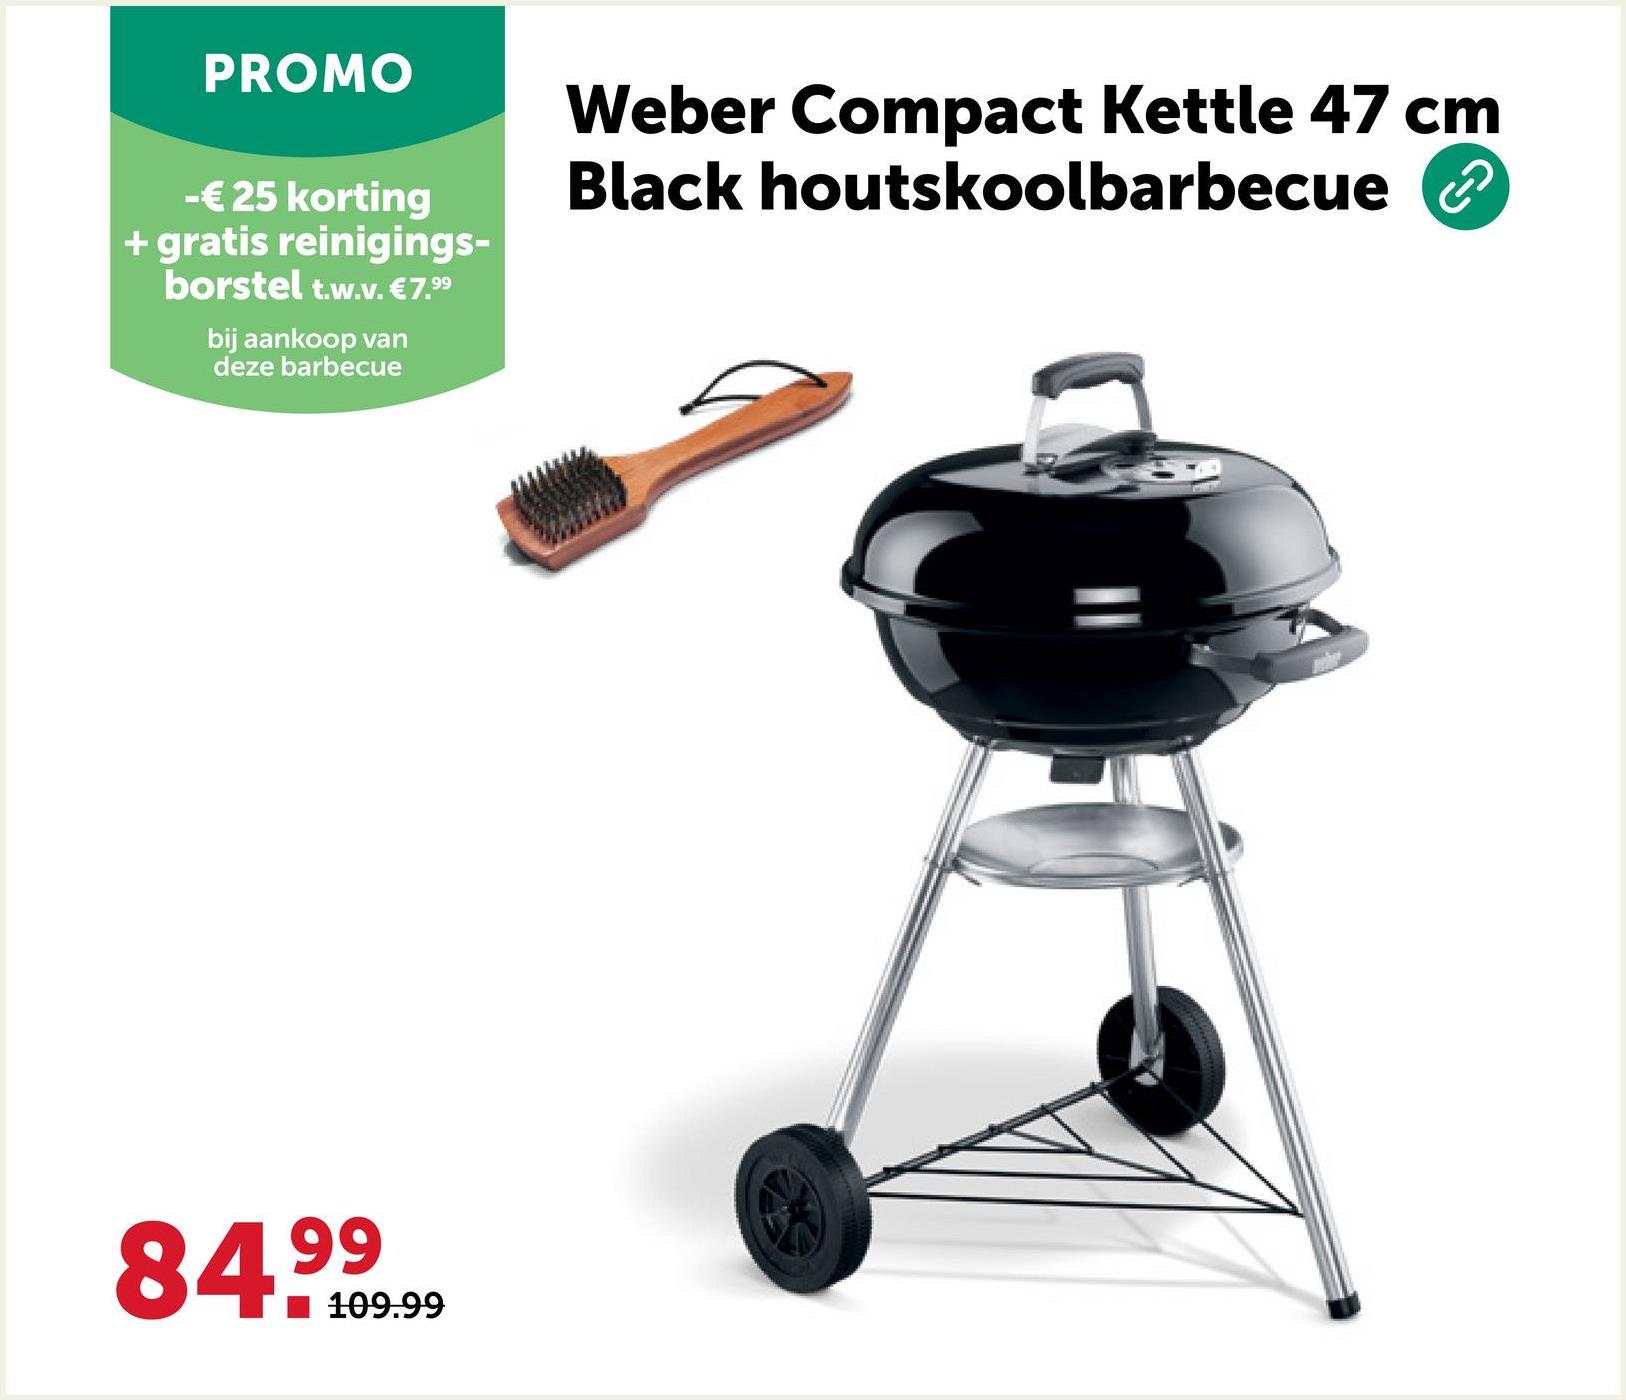 PROMO
-€25 korting
+ gratis reinigings-
borstel t.w.v. €7.99
bij aankoop van
deze barbecue
Weber Compact Kettle 47 cm
Black houtskoolbarbecue ②
84.99
109.99